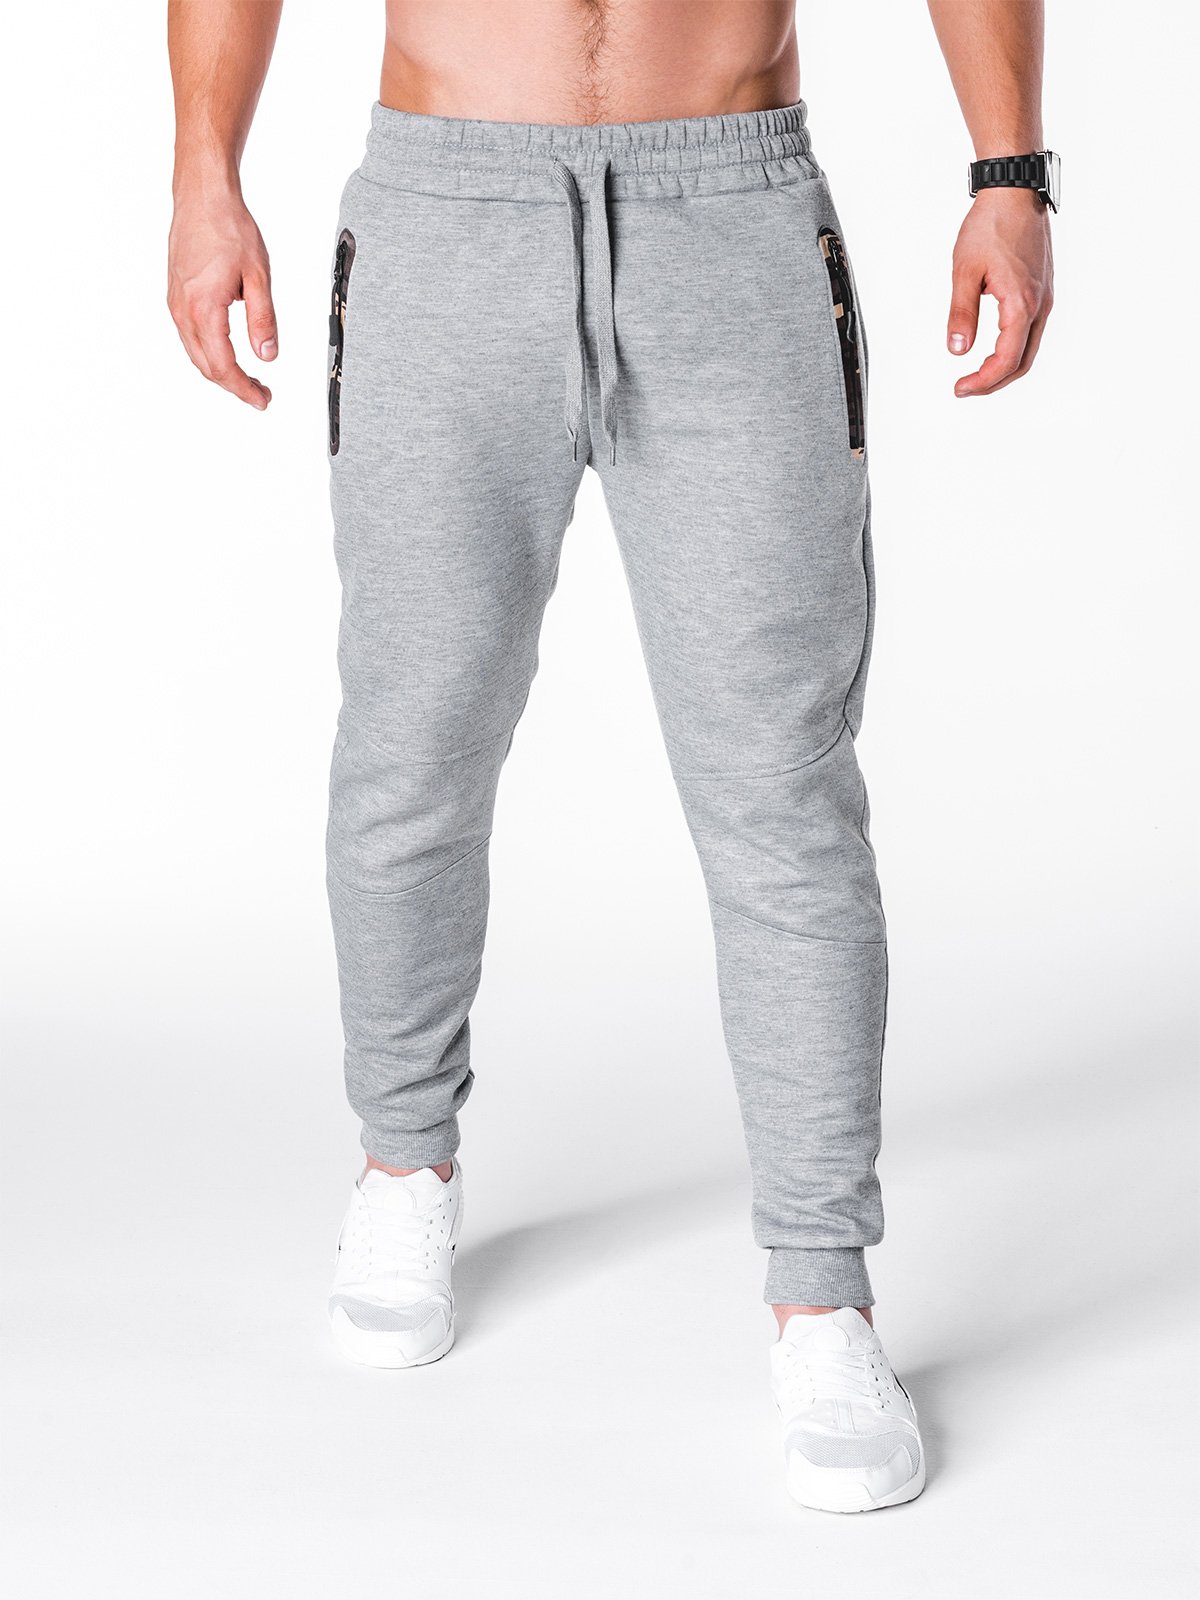 Men's sweatpants P692 - grey | MODONE wholesale - Clothing For Men